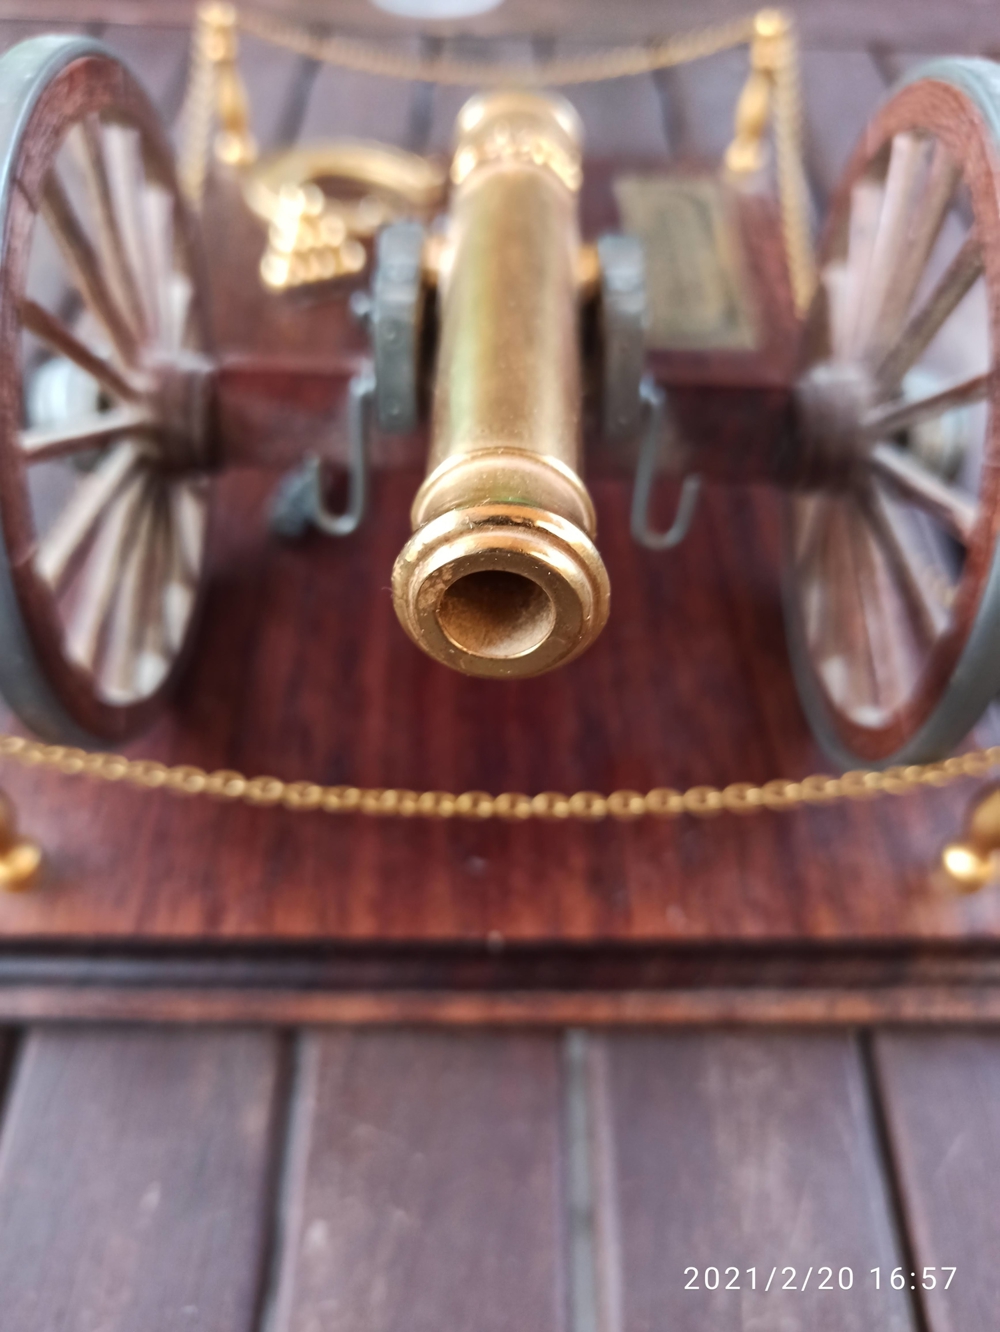 Modell Franklin Mint Civil War Cannon 1857